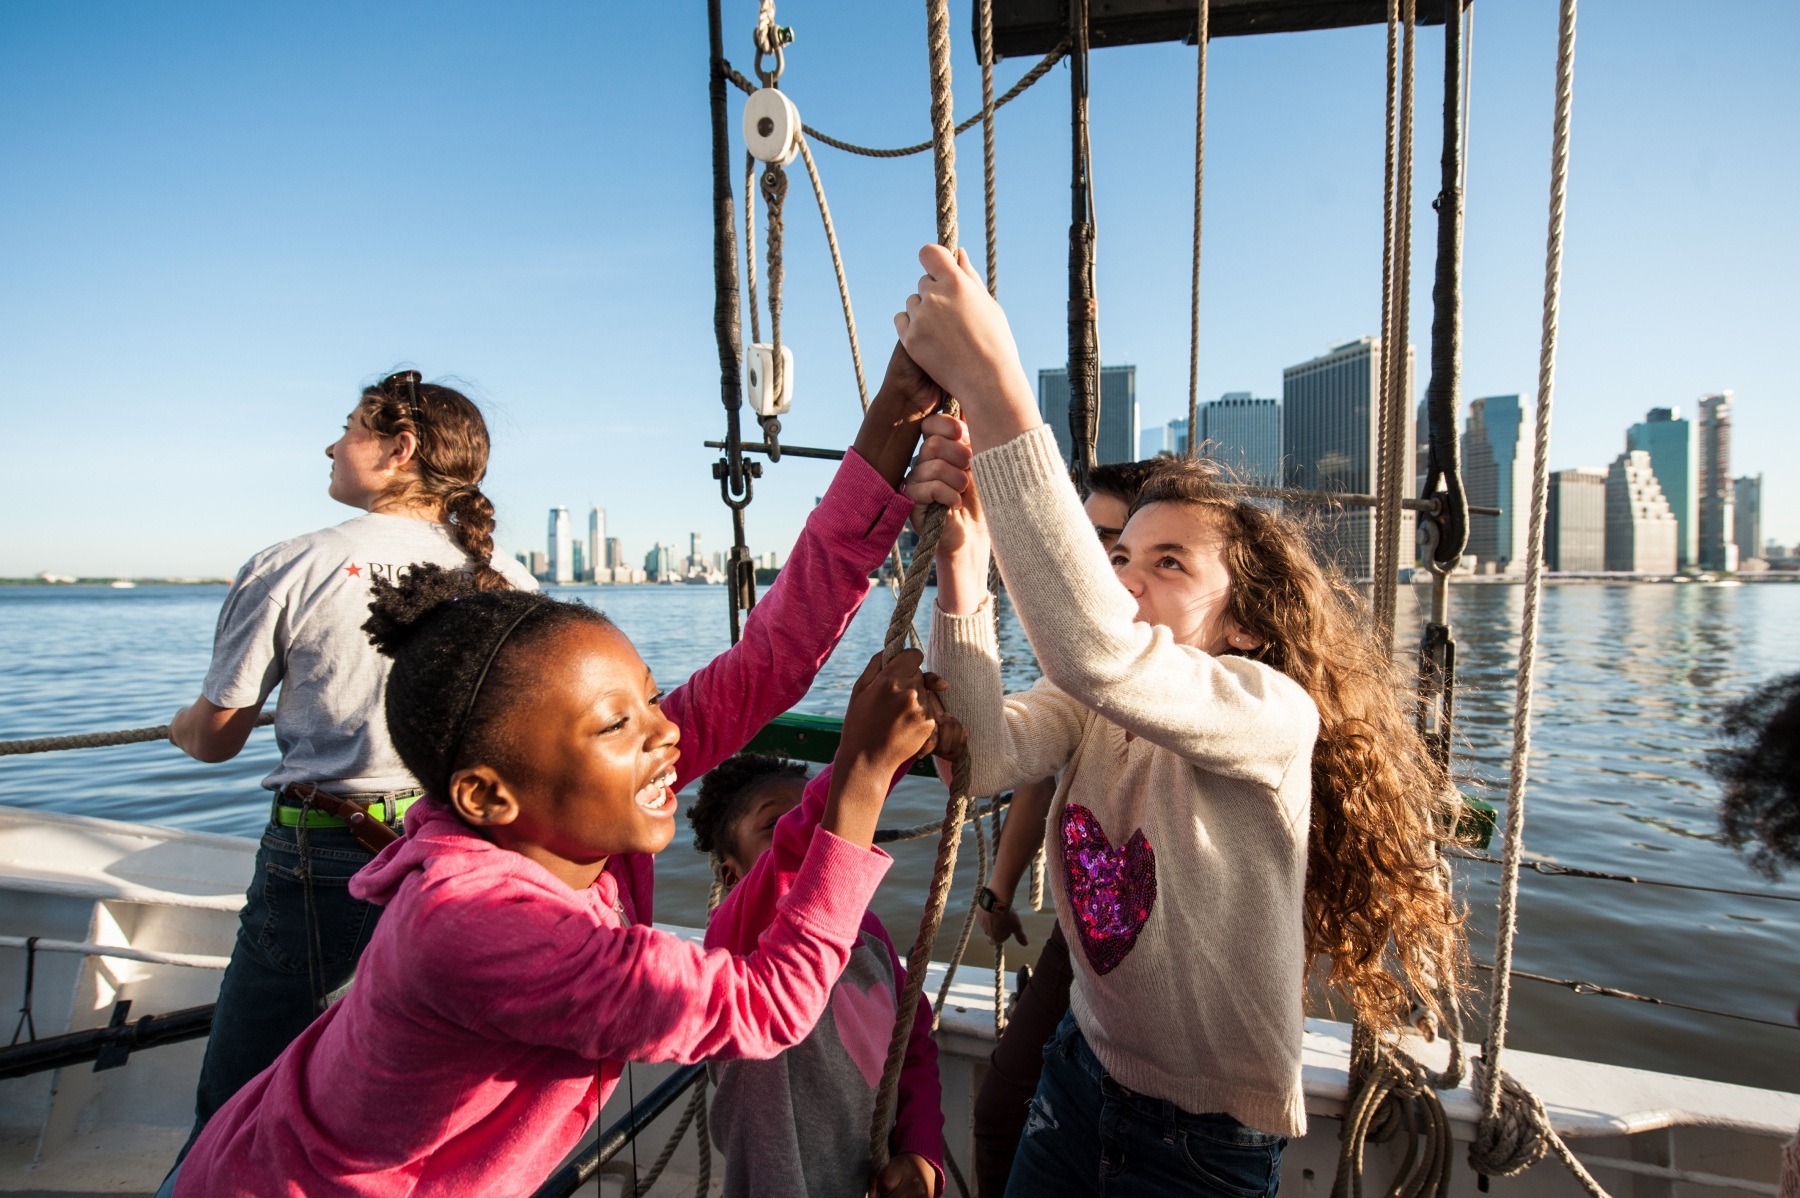 Children help raise Pioneer's sails